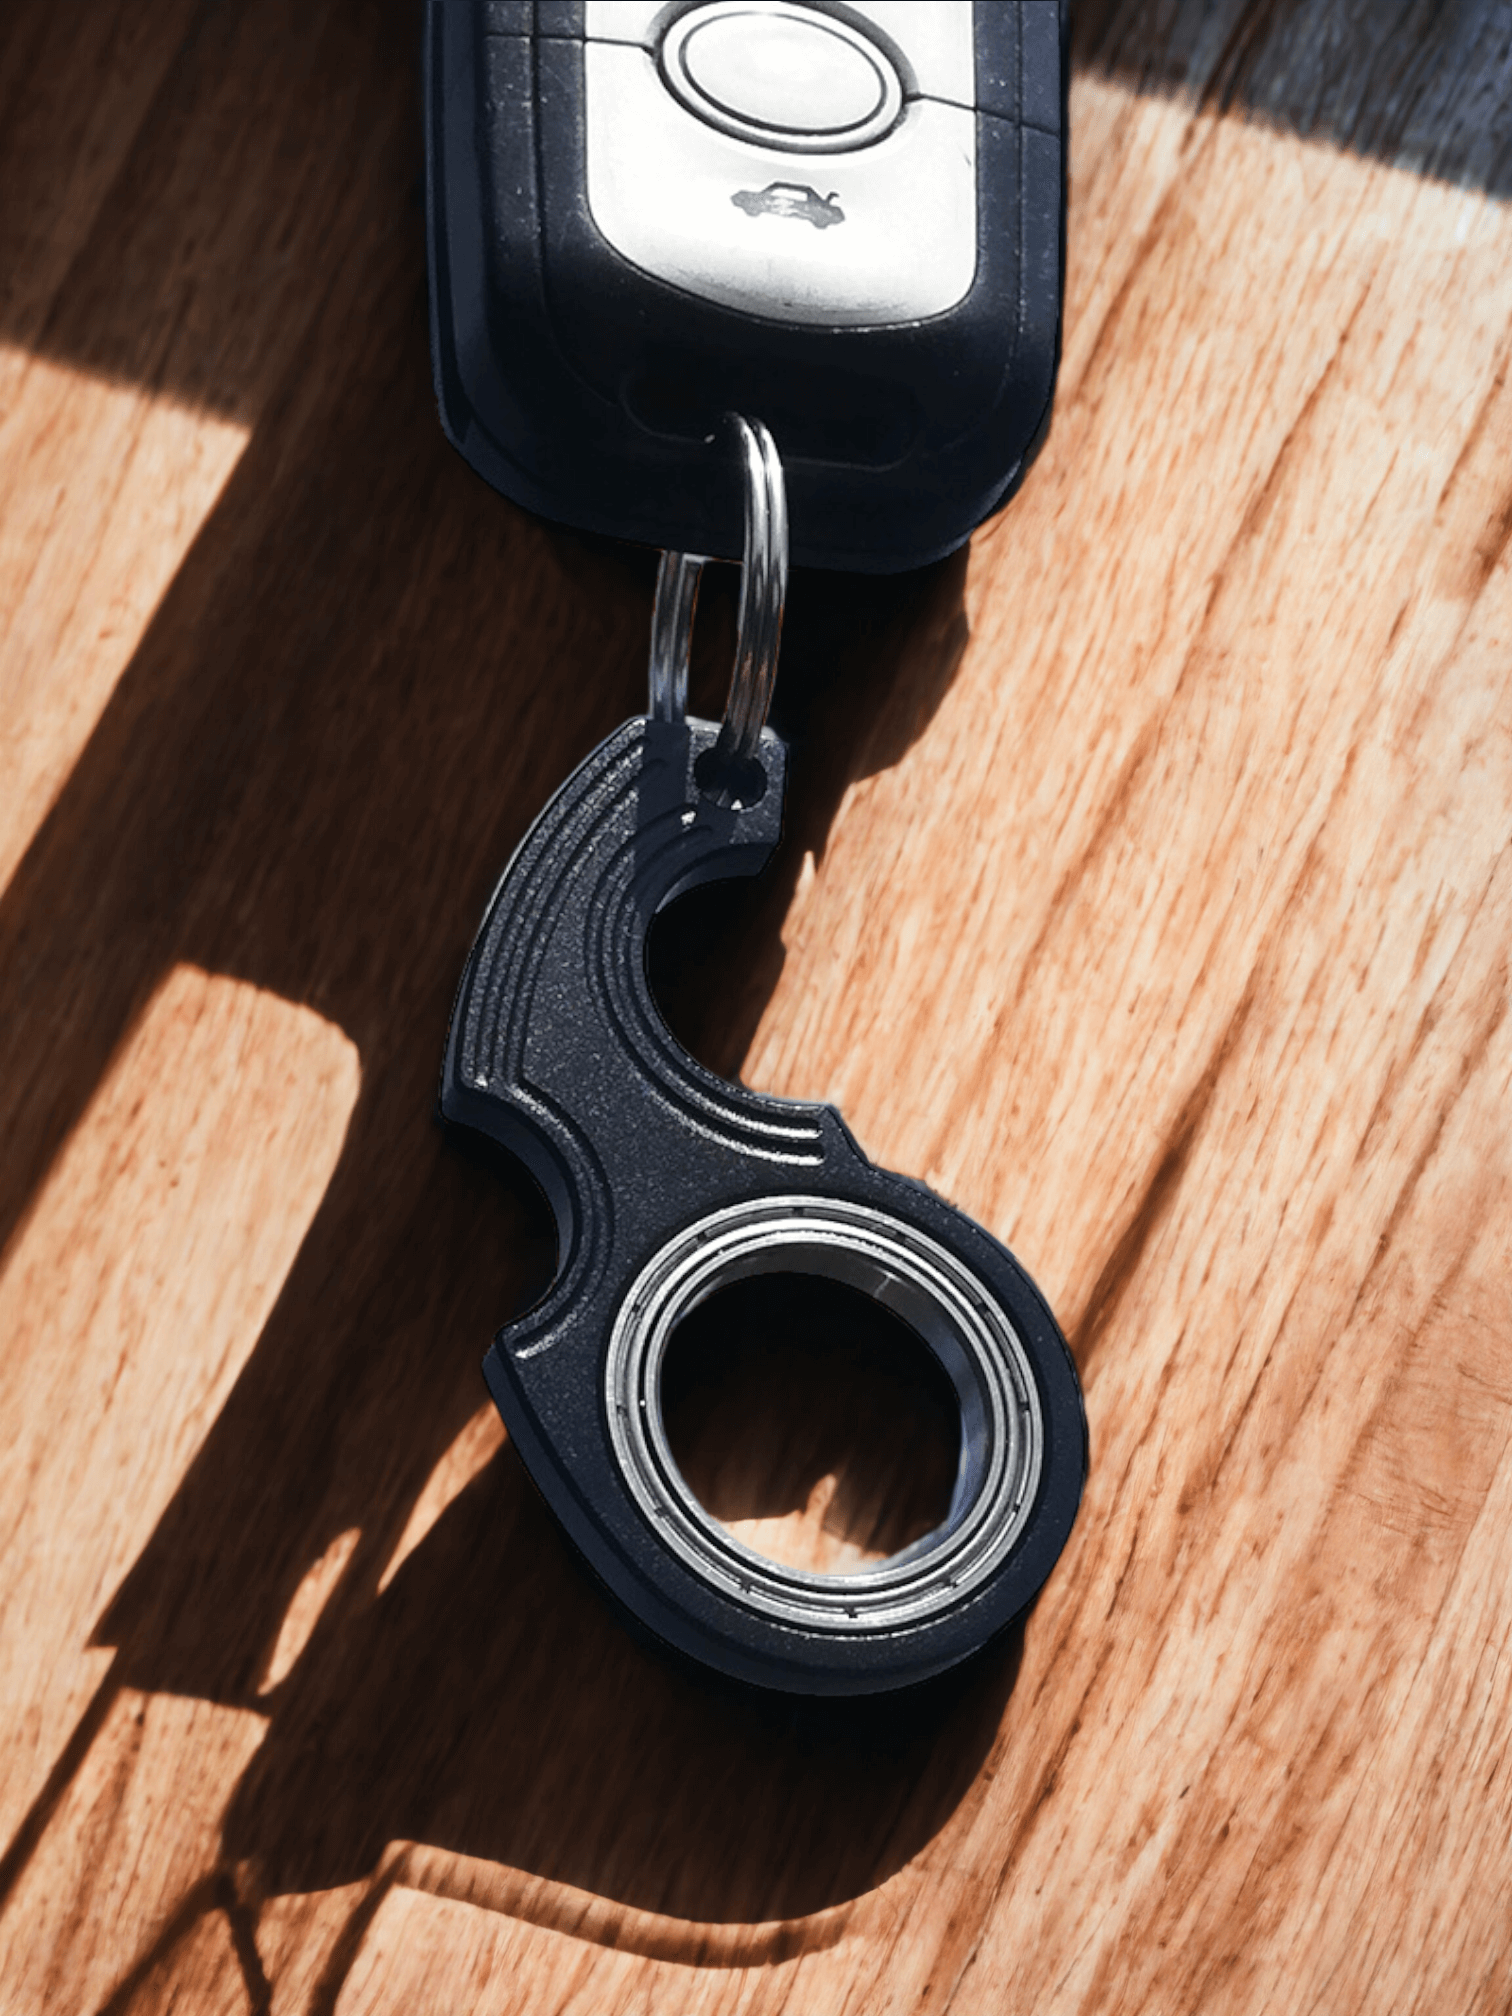 Spinner Keychain, for Ninja Spinner Keychain, Key Chain Spinner